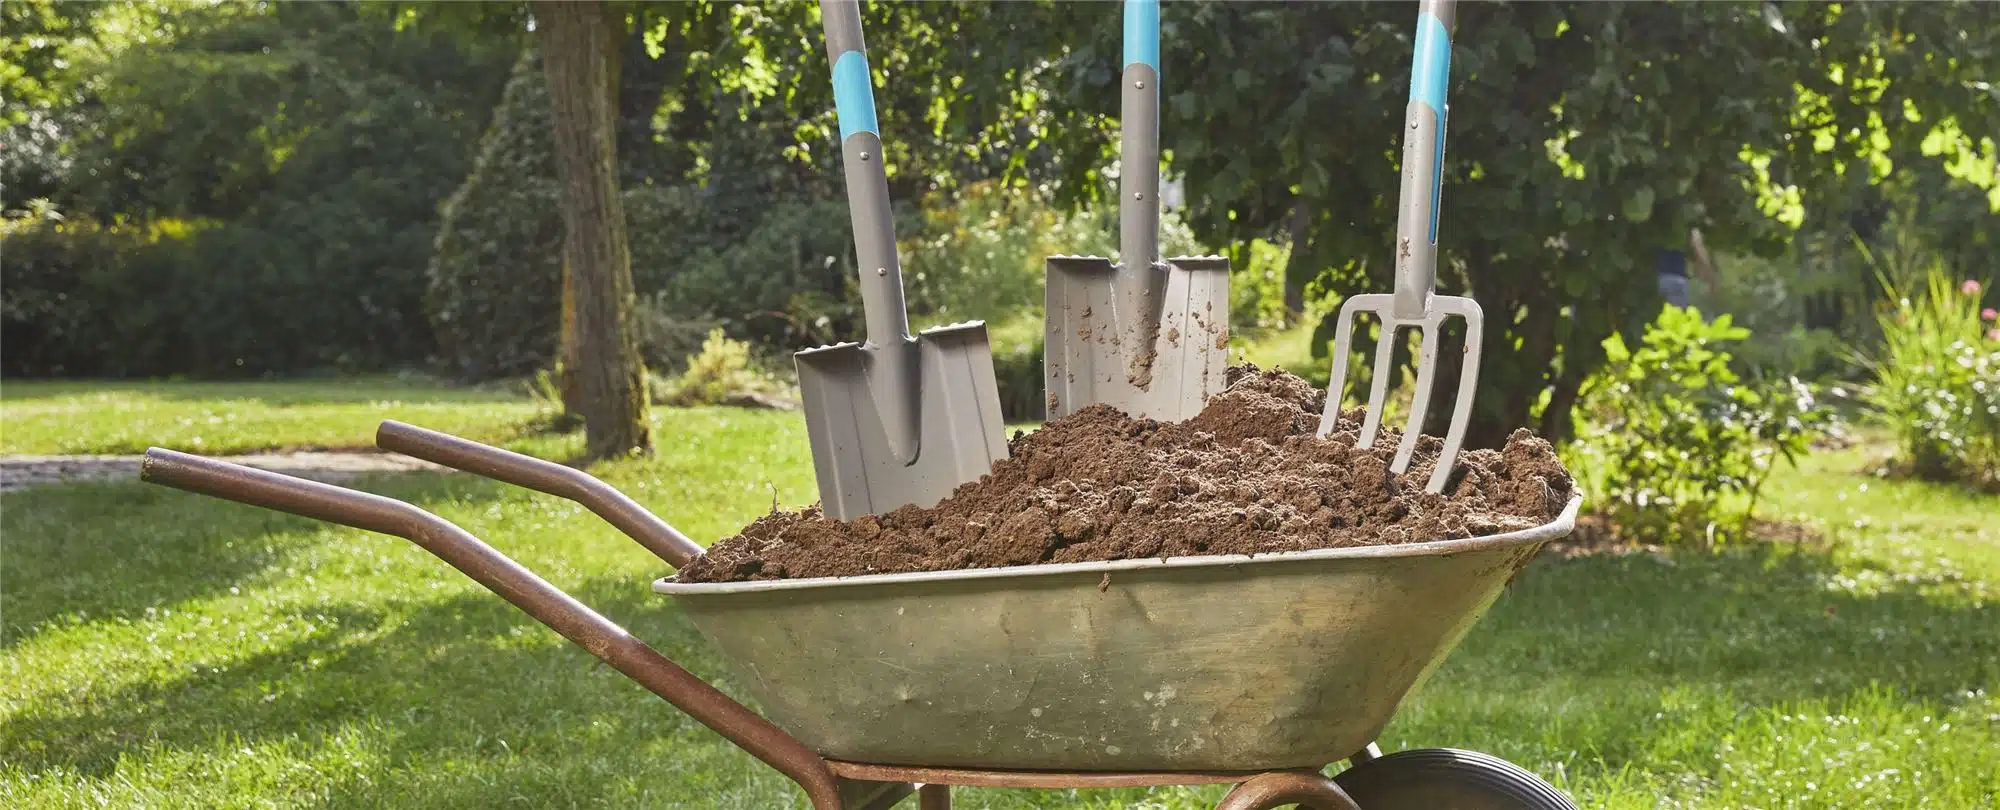 5 outils indispensables pour entretenir son jardin